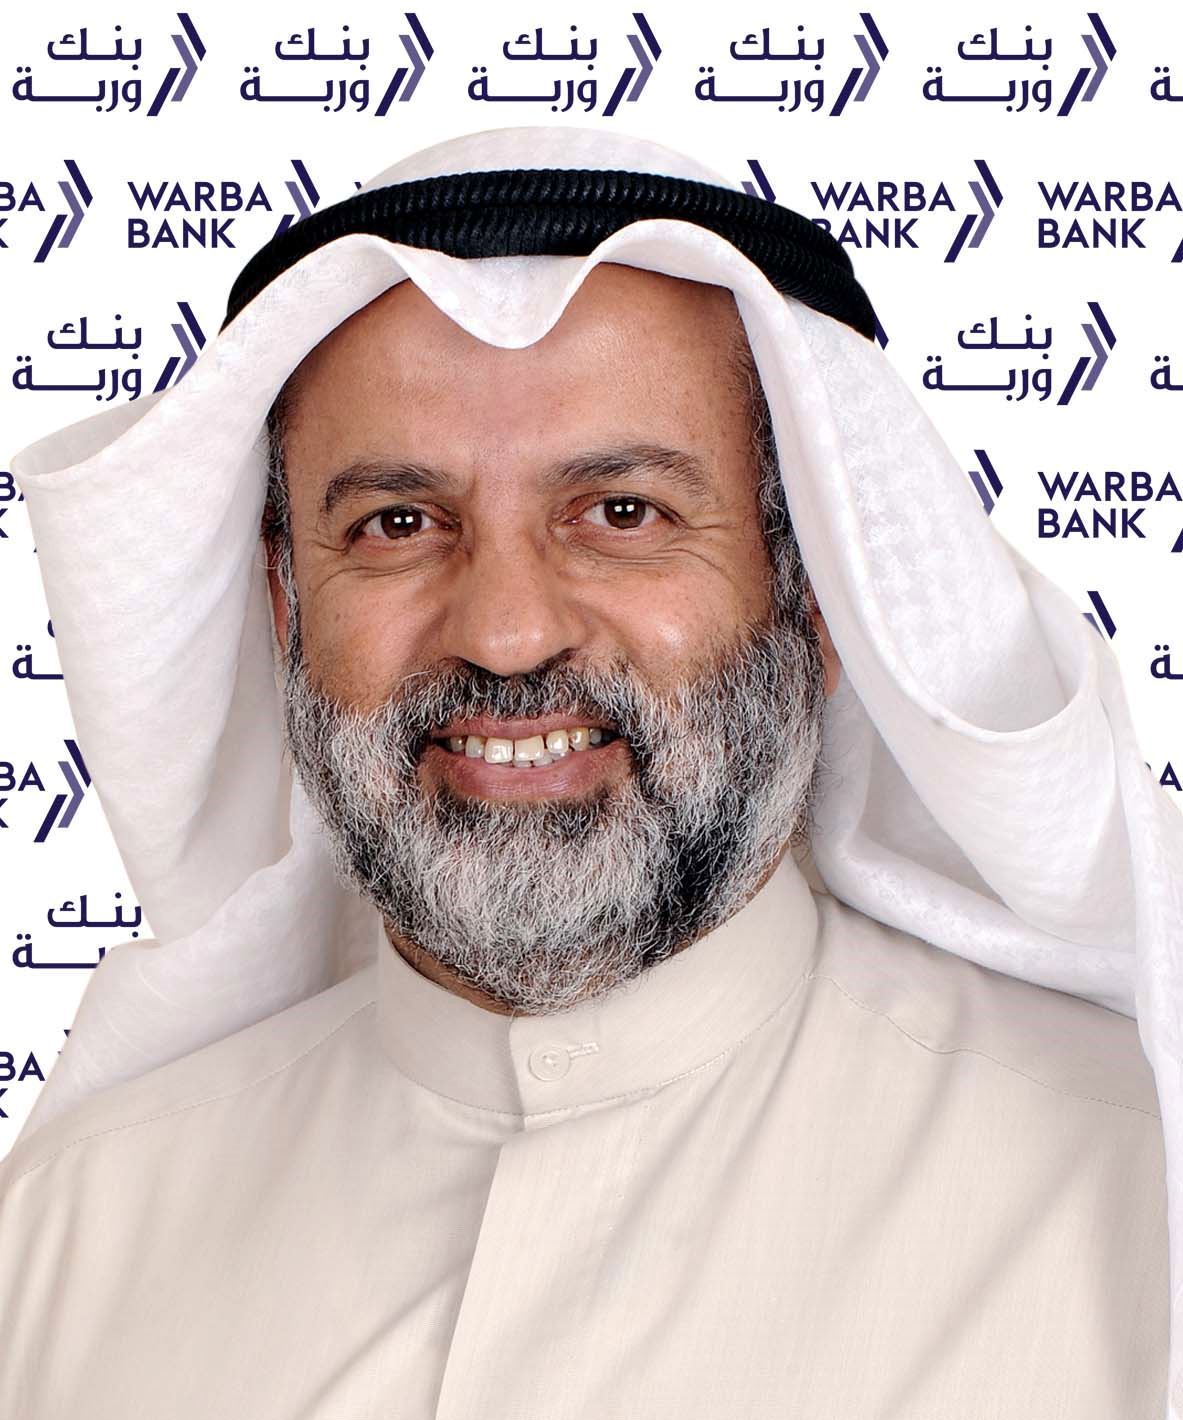 السيد/ عبد الوهاب عبد الله الحوطي - رئيس مجلس إدارة بنك وربة